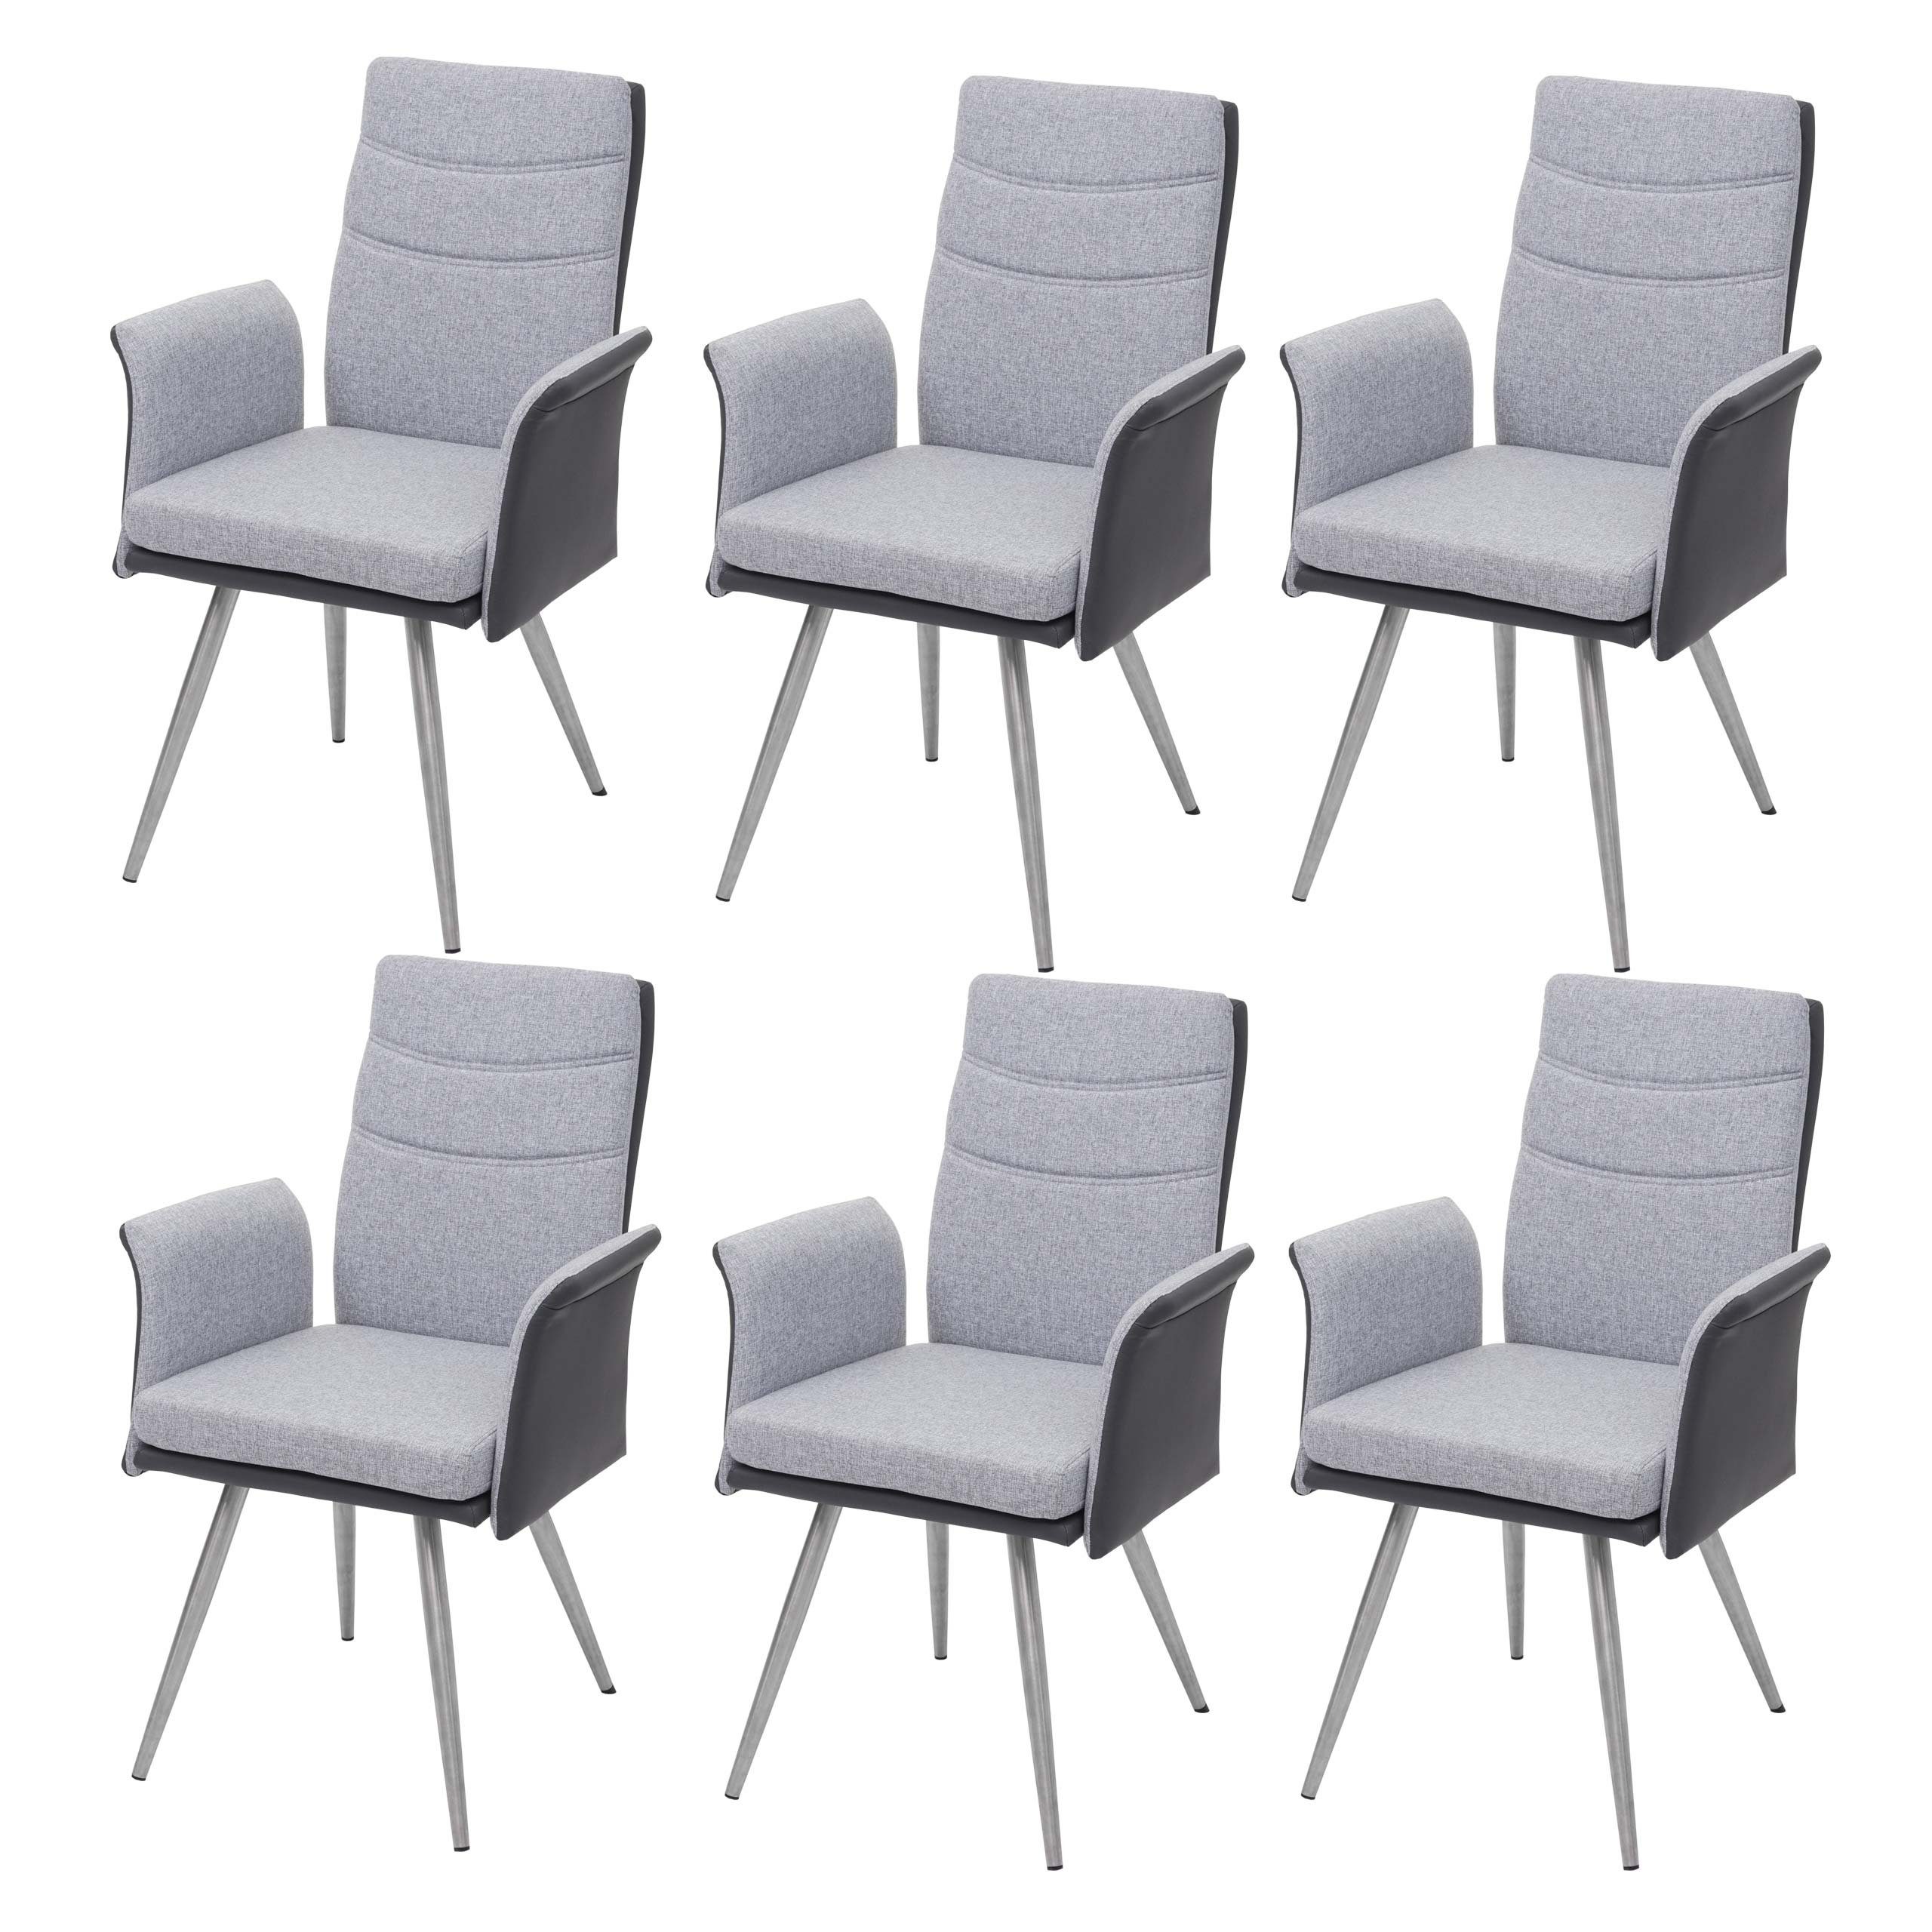 MCW Esszimmerstuhl MCW-G54-6 (Stühle mit Armlehne), 6er-Set, Inklusive  Fußbodenschoner, dekorative glänzende Ziernaht